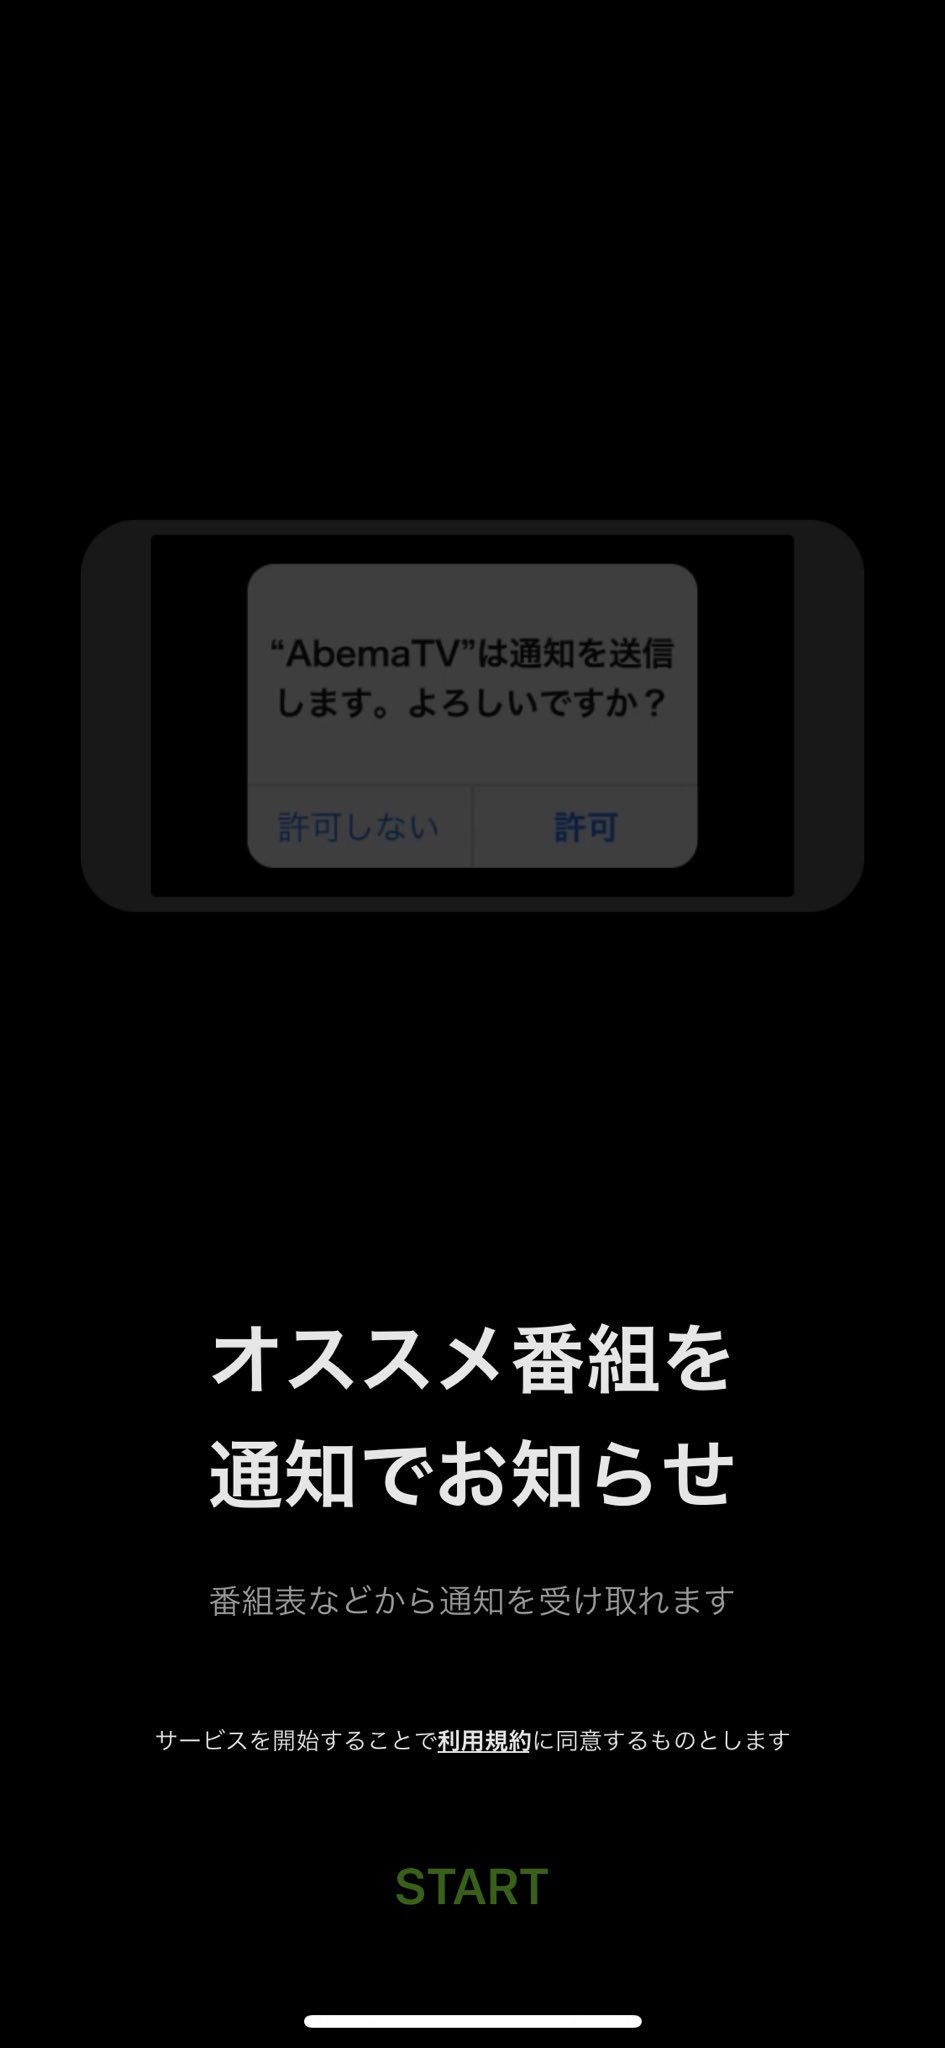 塩谷 舞 Mai Shiotani على تويتر はましゃか Shakachang が3時間もmcしてる番組を観たいのに Abematv のアプリがどう頑張ってもつながらない アンインストールして入れ直してもだめ Iphone再起動してもだめ 電波はあるのに